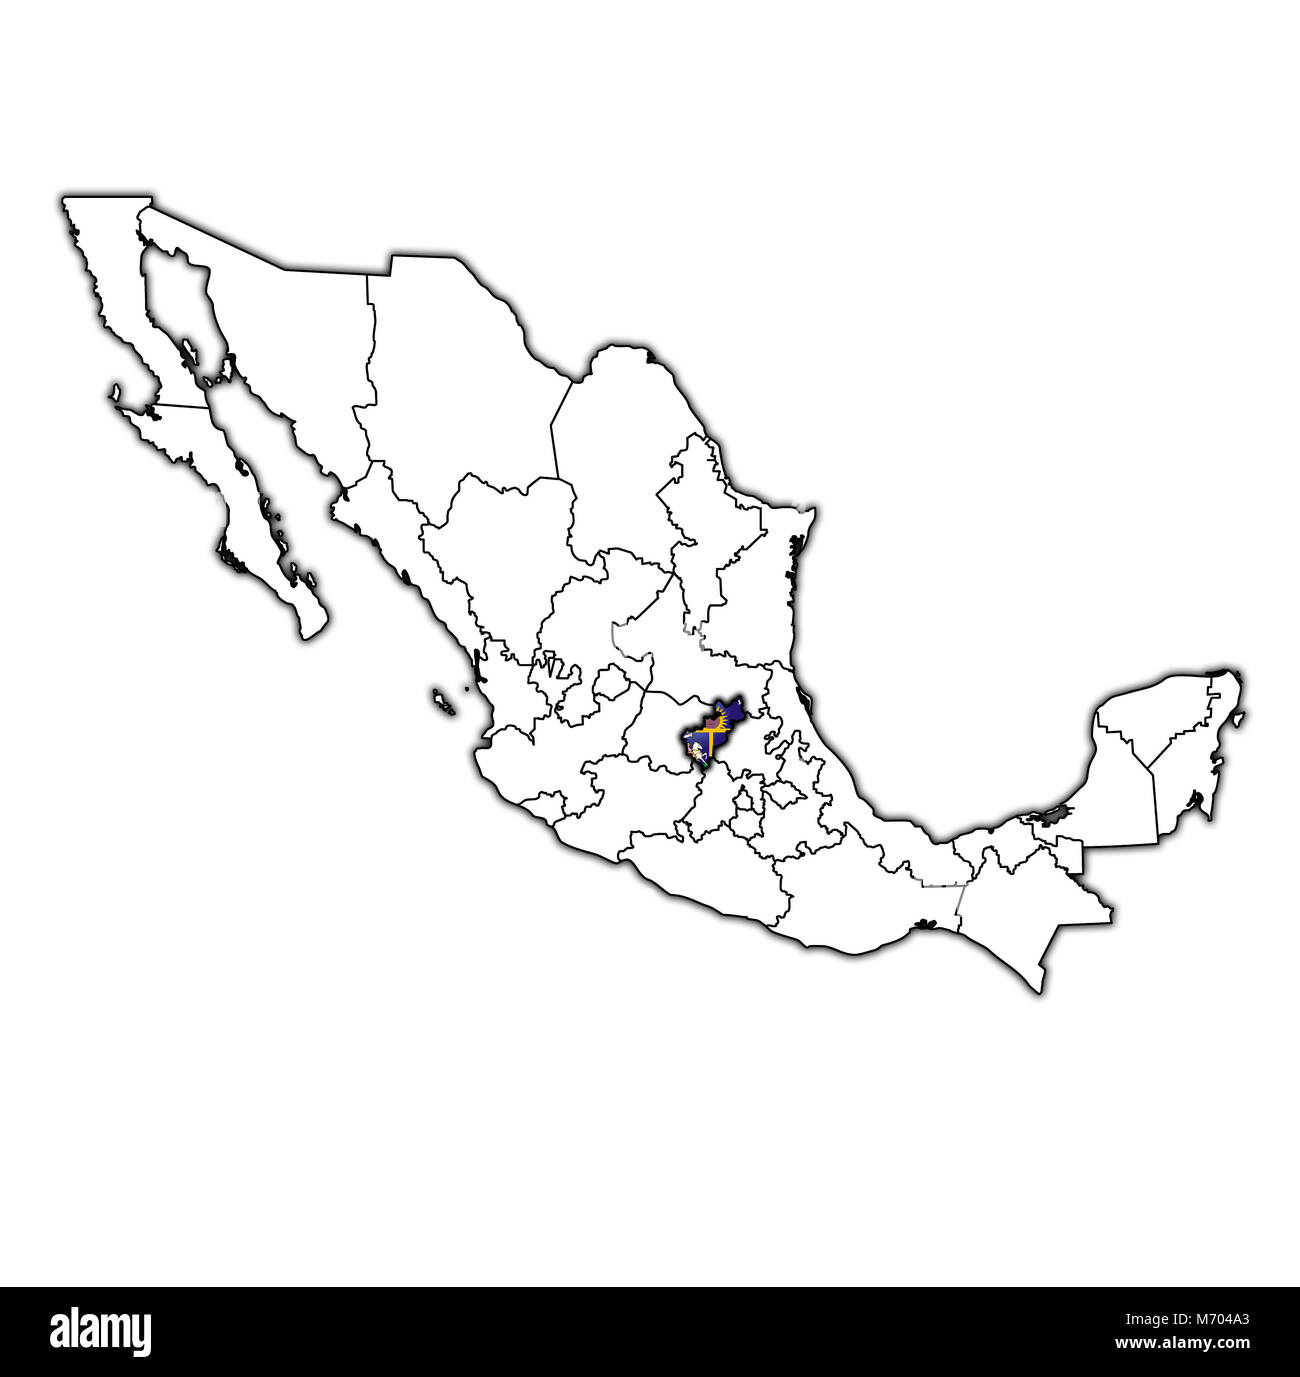 L'emblème de l'état de queretaro sur une carte avec les divisions administratives et les frontières du Mexique Banque D'Images